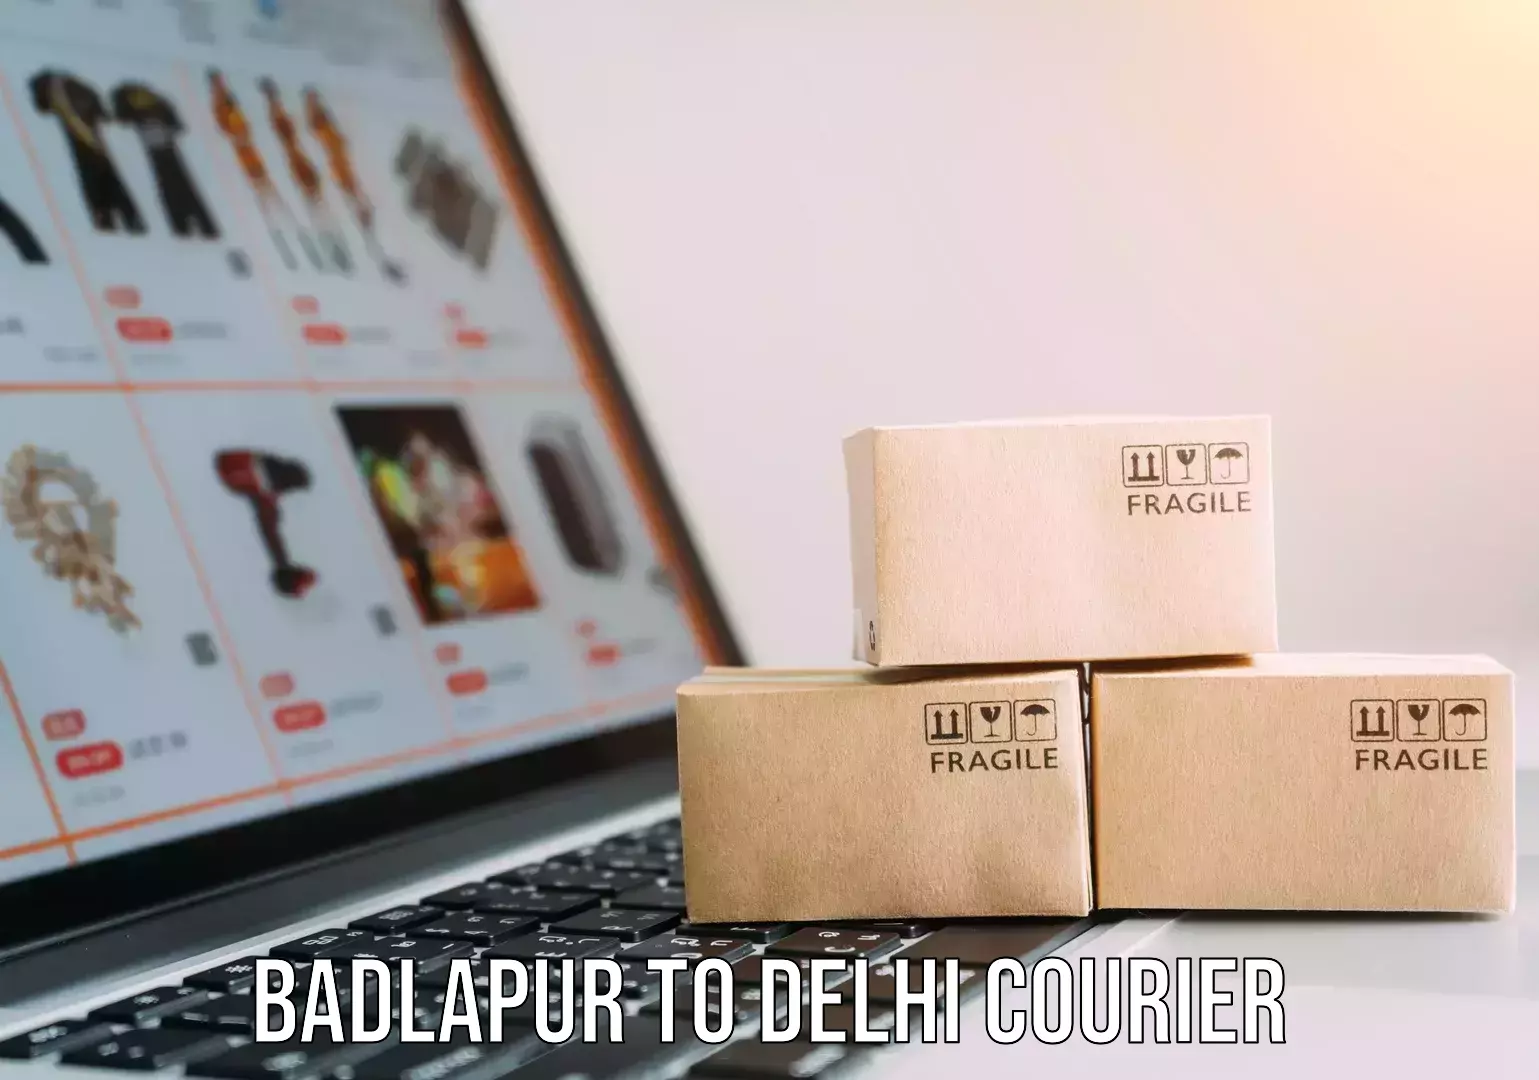 Smart logistics solutions Badlapur to Delhi